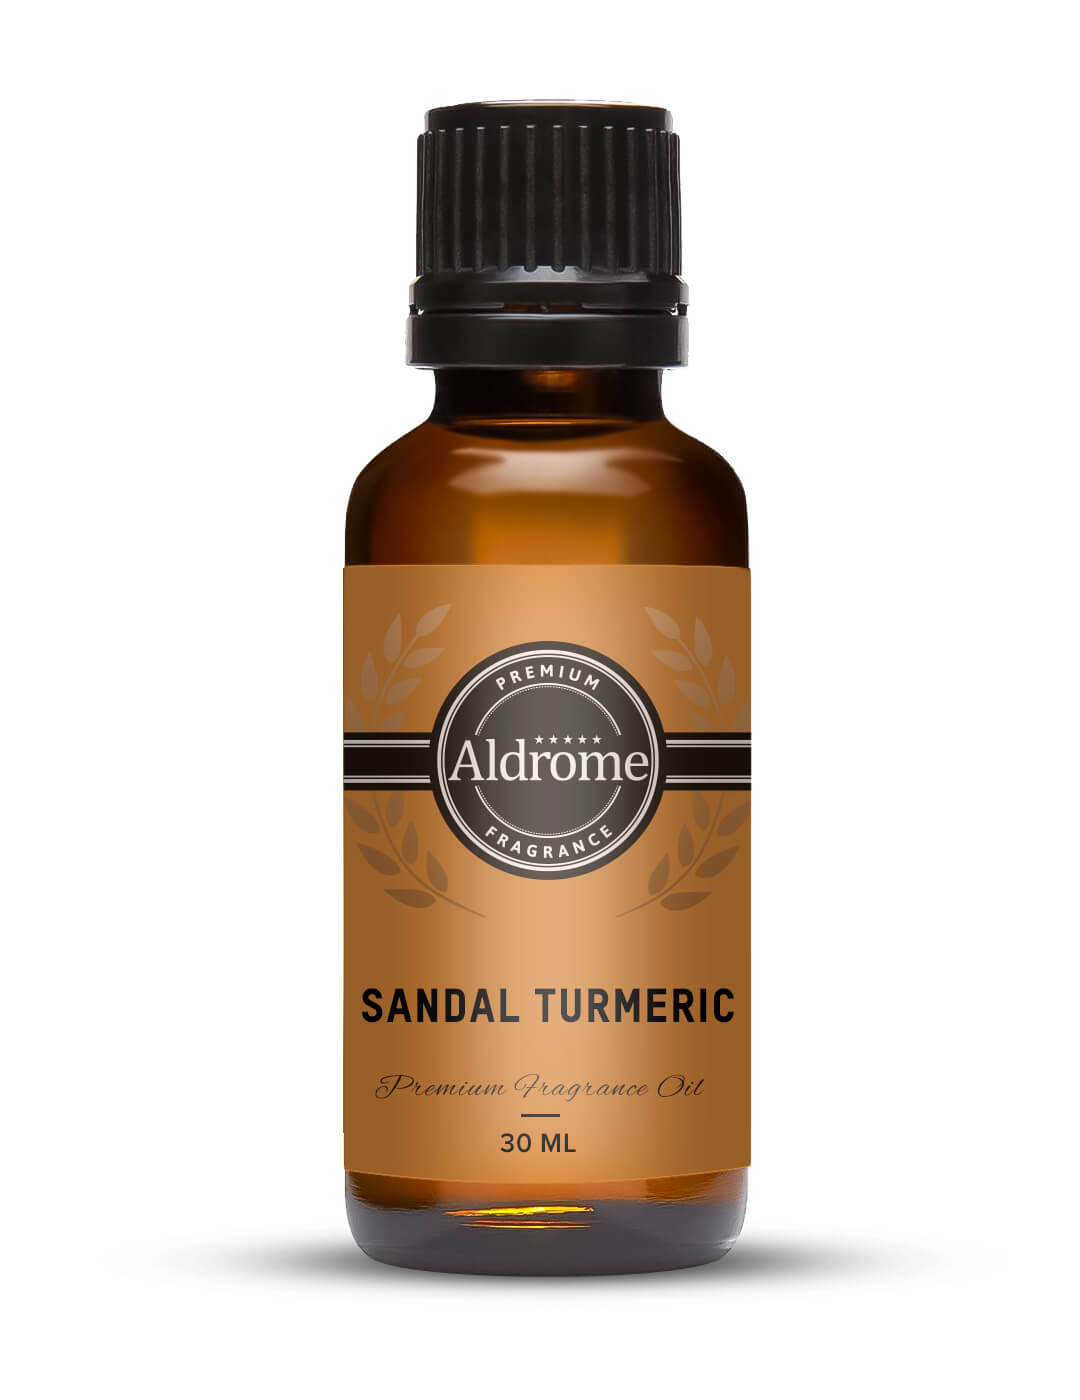 Sandal Turmeric Fragrance Oil - 30ml | Buy Sandal Turmeric Fragrance Oil | Aldrome Premium Fragrance Oil